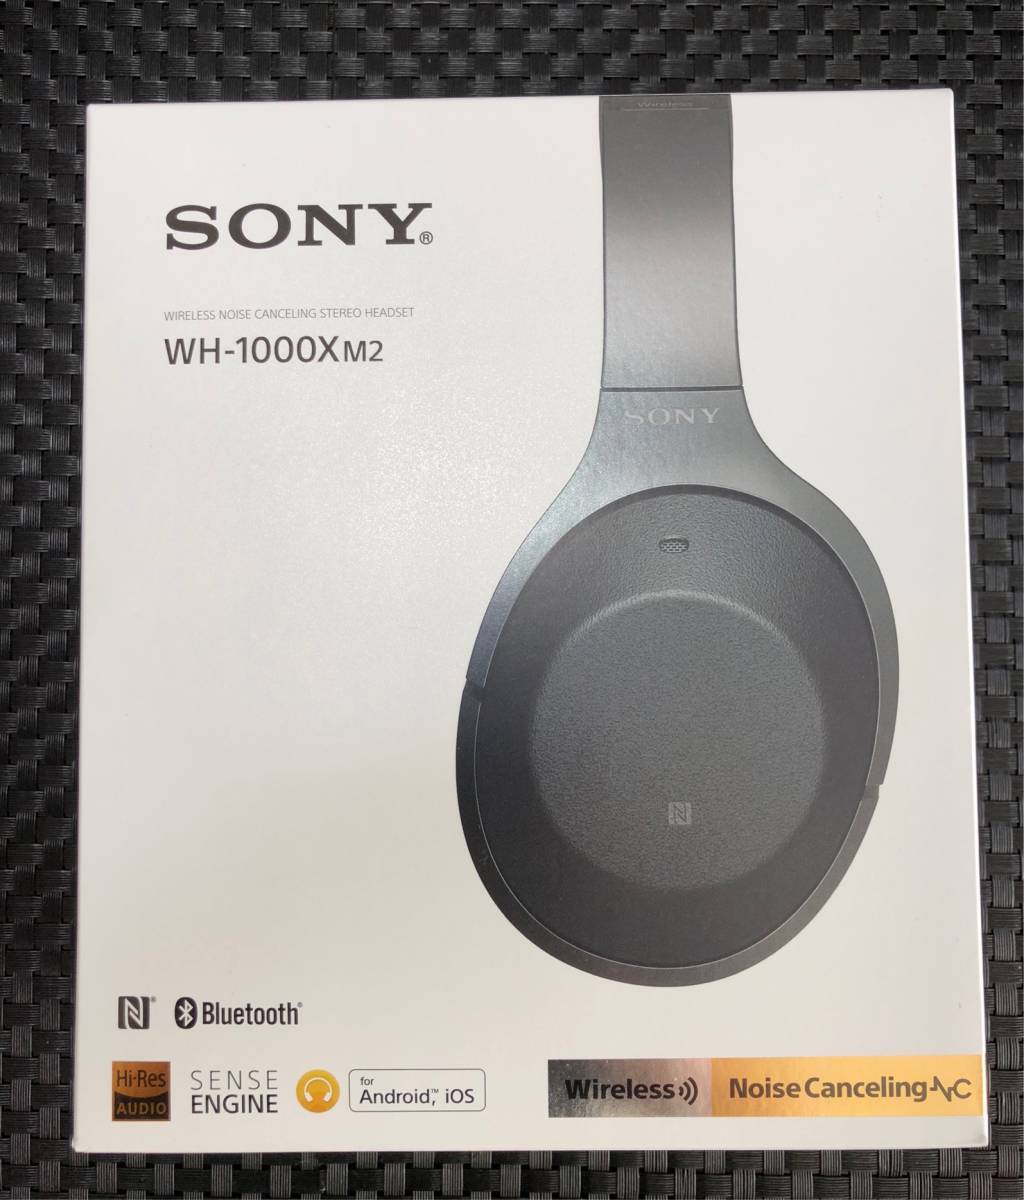 【美品】SONY WH-1000XM2無線降噪耳機黑色 原文:【美品】SONY WH-1000XM2 ワイヤレスノイズキャンセリングヘッドセット ブラック